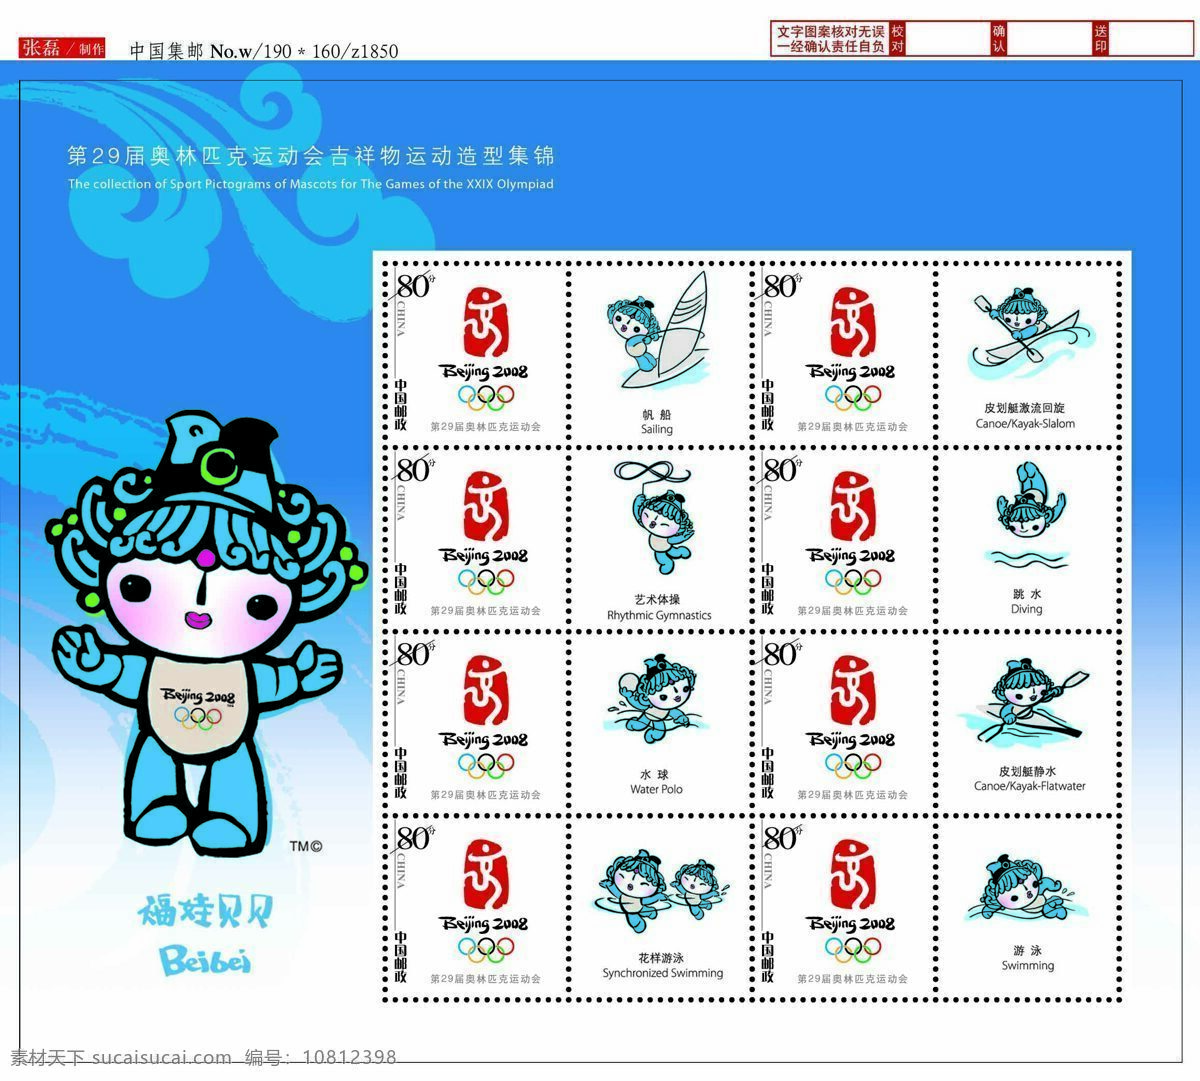 奥运 个性化 邮票 通用 版 届 奥林匹克运动会 吉祥物 运动 造型 集锦 福娃贝贝 通用版 画册设计 设计图 设计图库